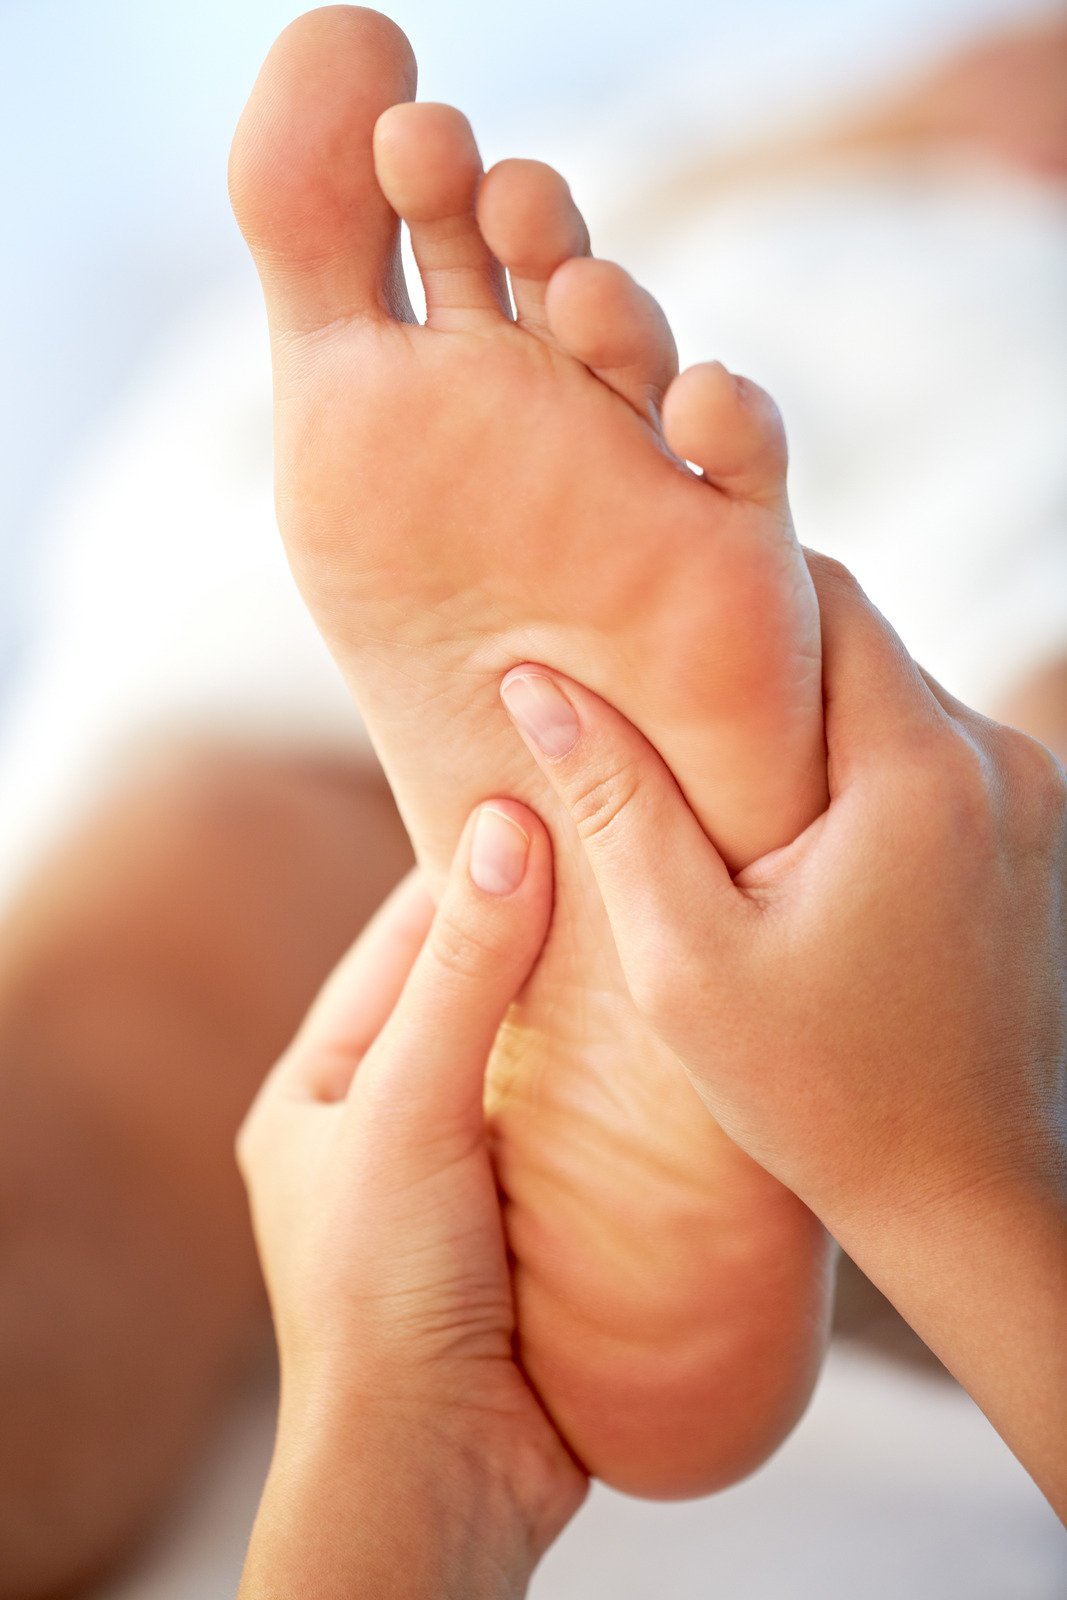 Feet massage - Fotos do Canva